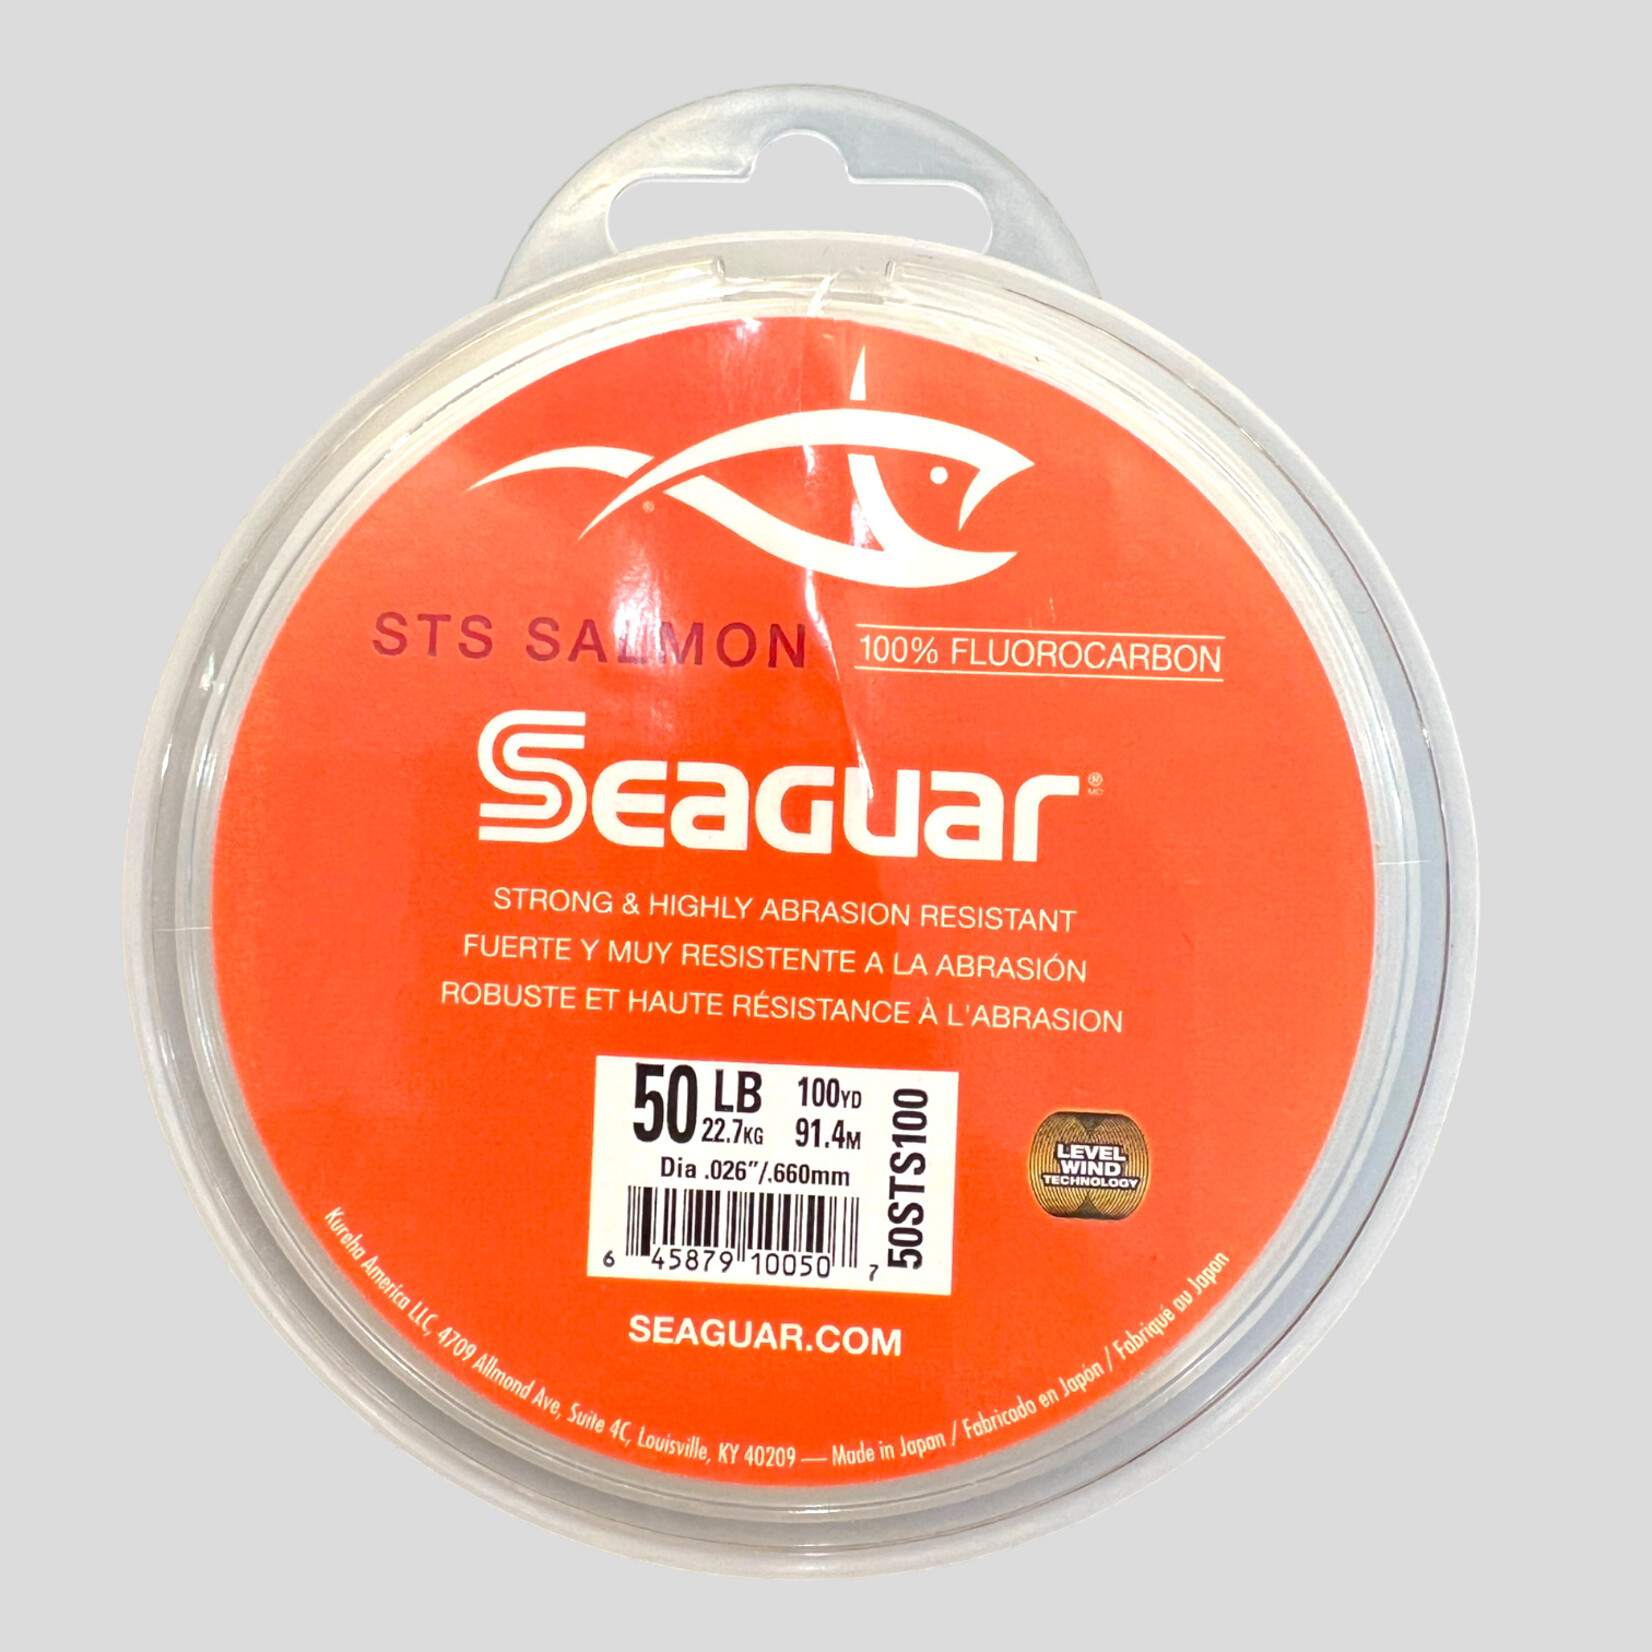 Seaguar Seaguar STS Salmon Fluorocarbon 100yds